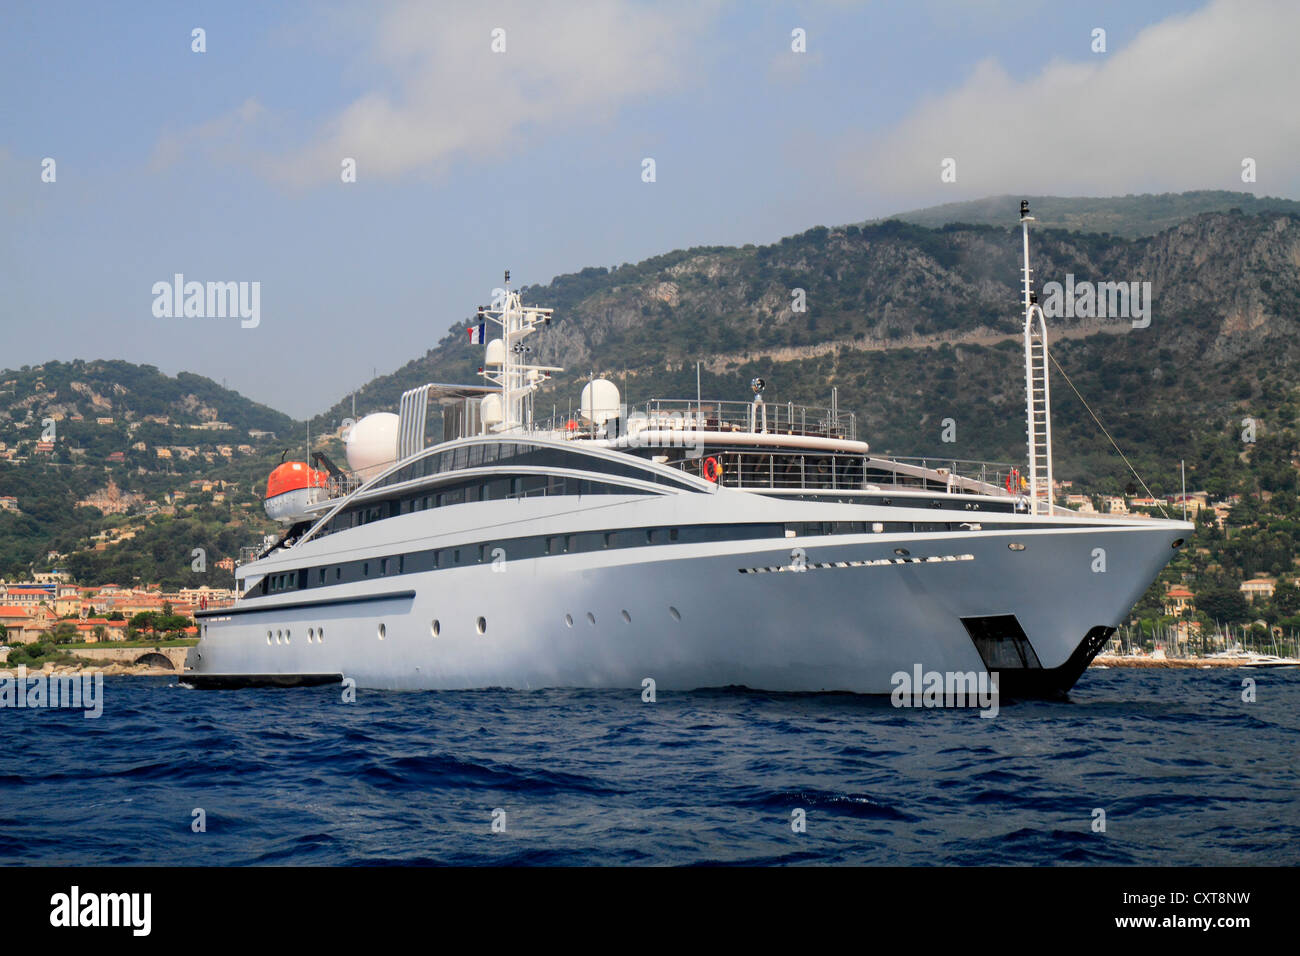 RM elegante, un cruiser costruito da Kanellos Bros, Lunghezza: 72.48 metri, costruita nel 2005, Cap Ferrat, Costa Azzurra, Francia Foto Stock